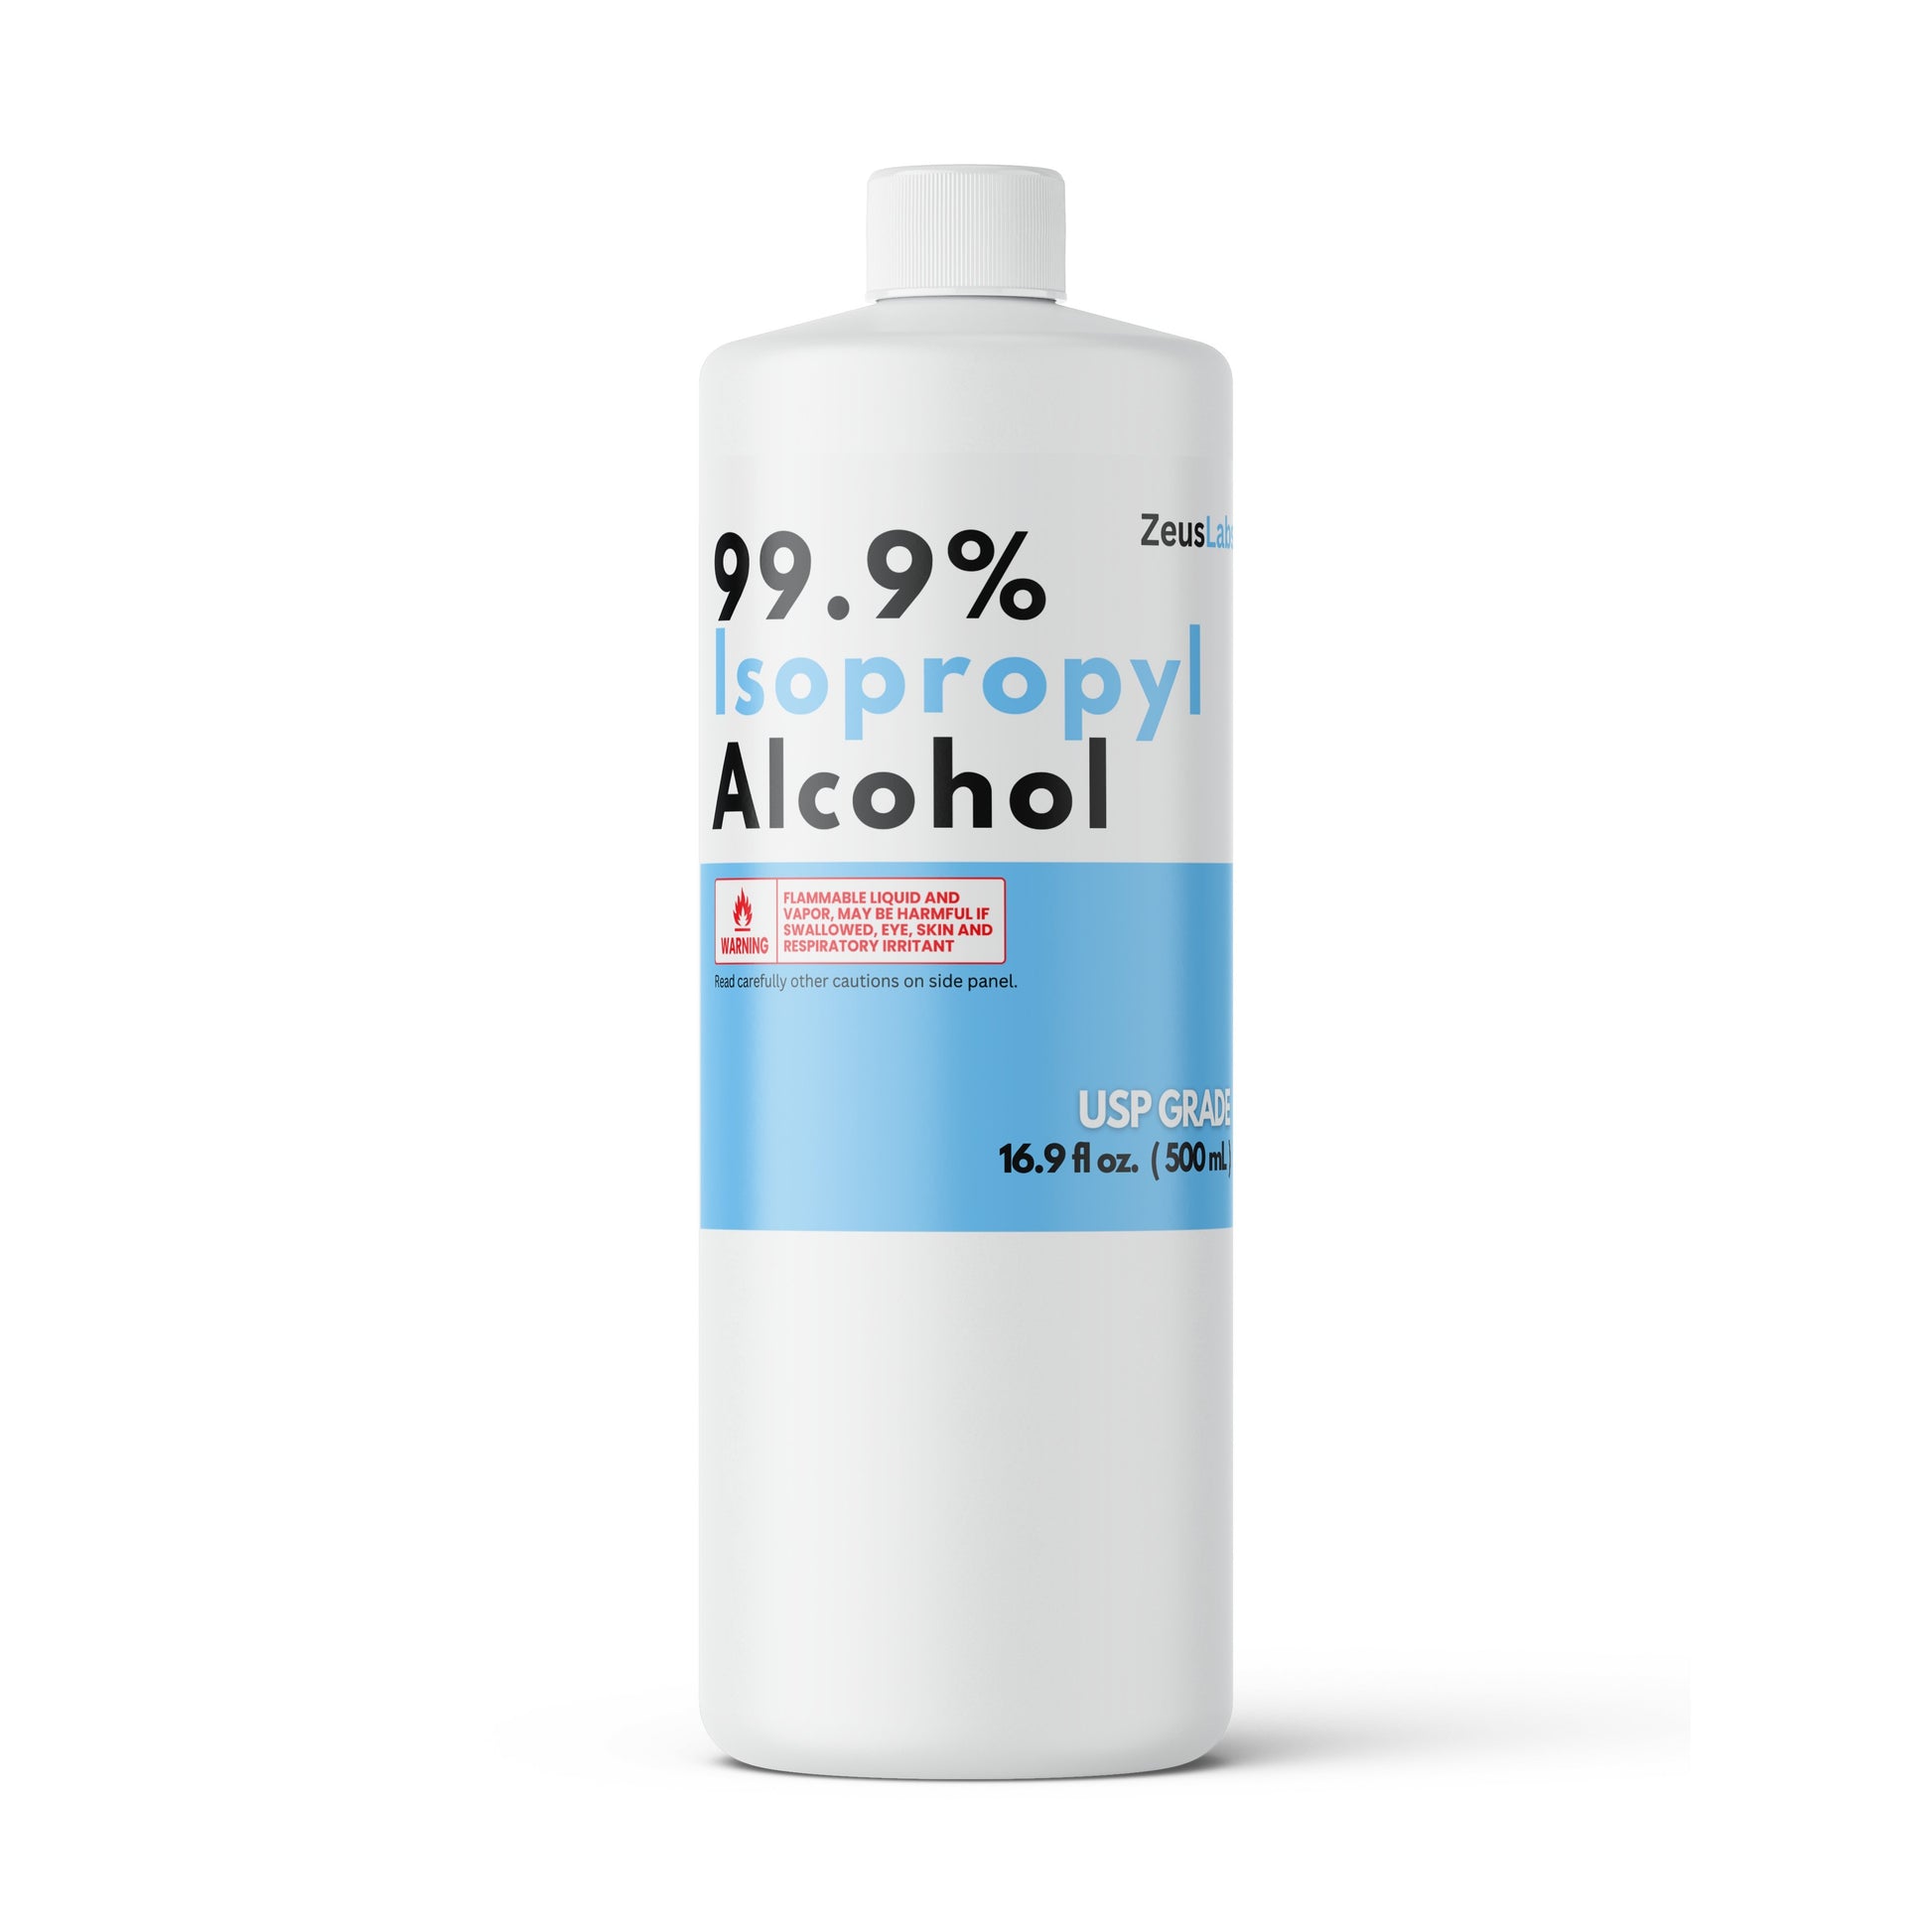 DSTOCK60 – Lot de 2 Bidons de 5 litres d'Alcool Isopropylique 99.9% extra  pur - Isopropanol